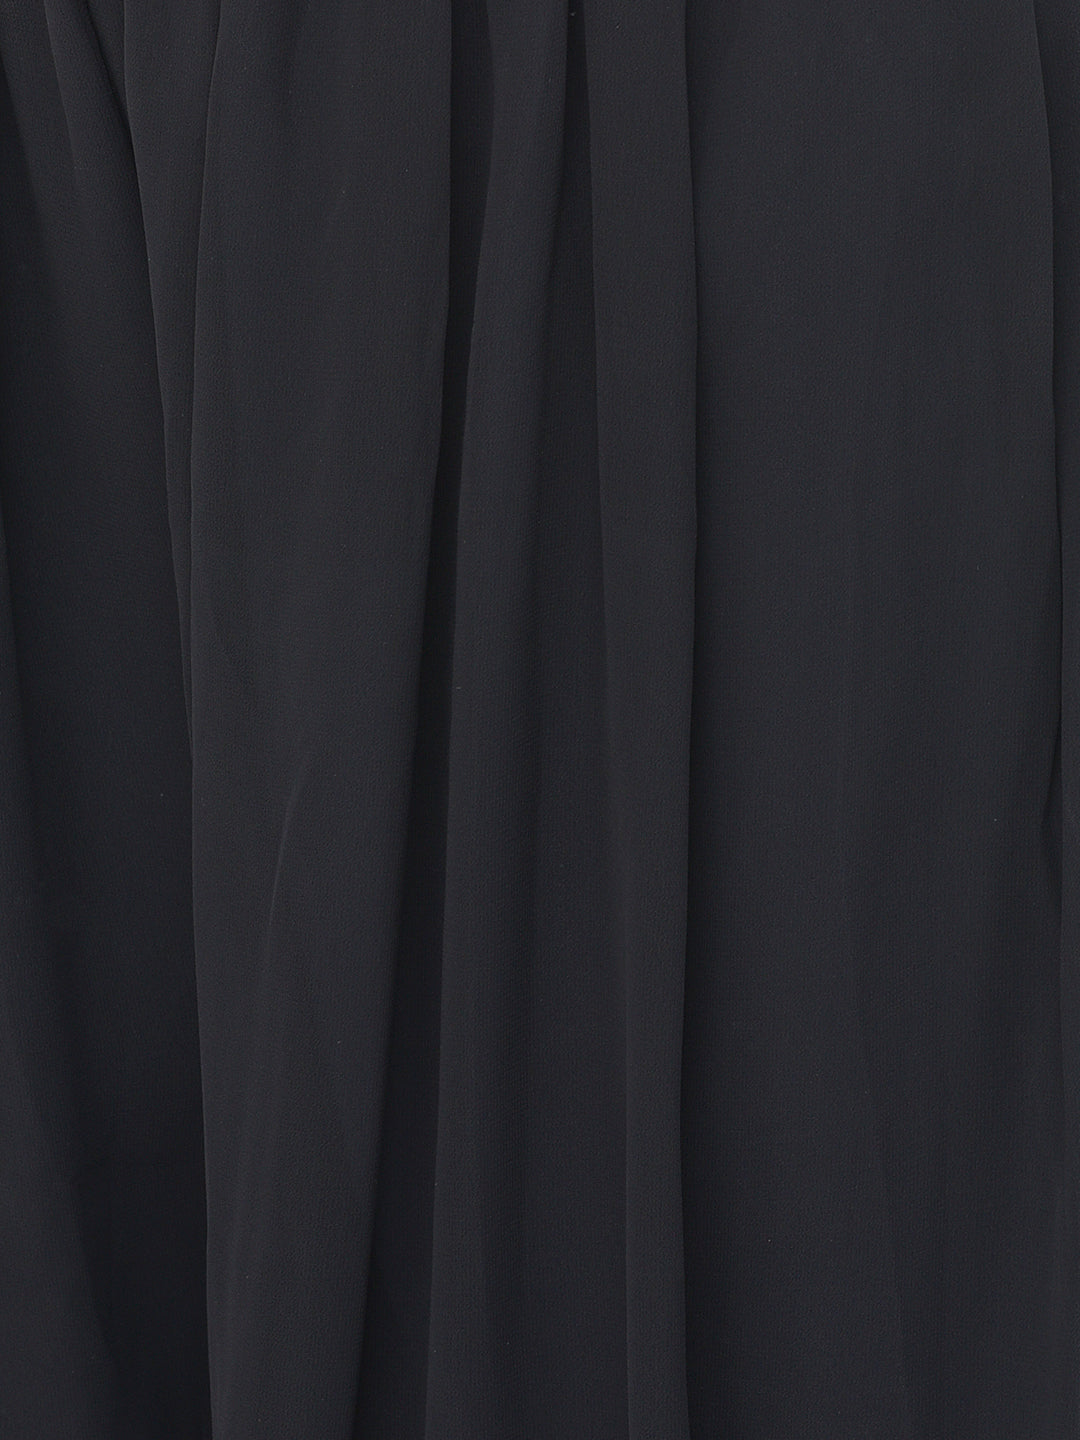 Neeru'S black color, georgette fabric salwar kameez